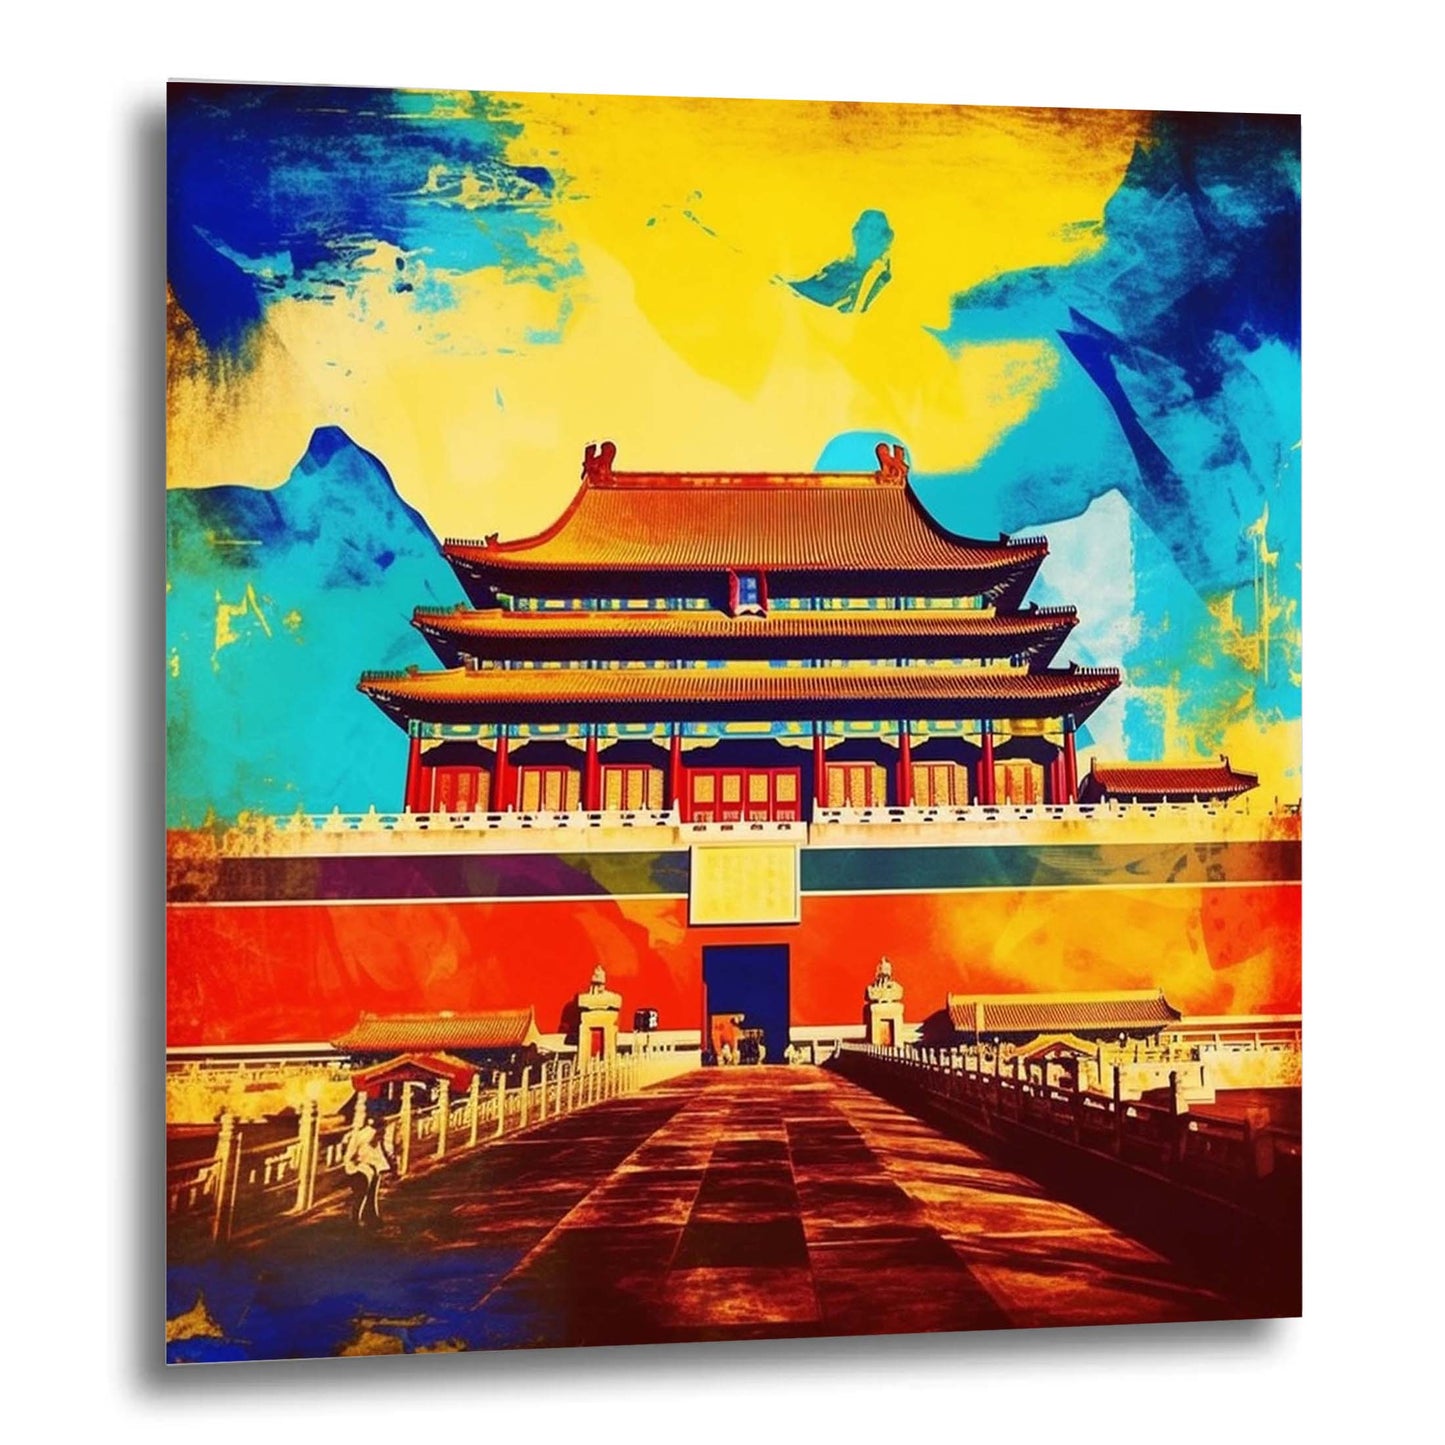 Beijing Forbidden City - mural in pop art style